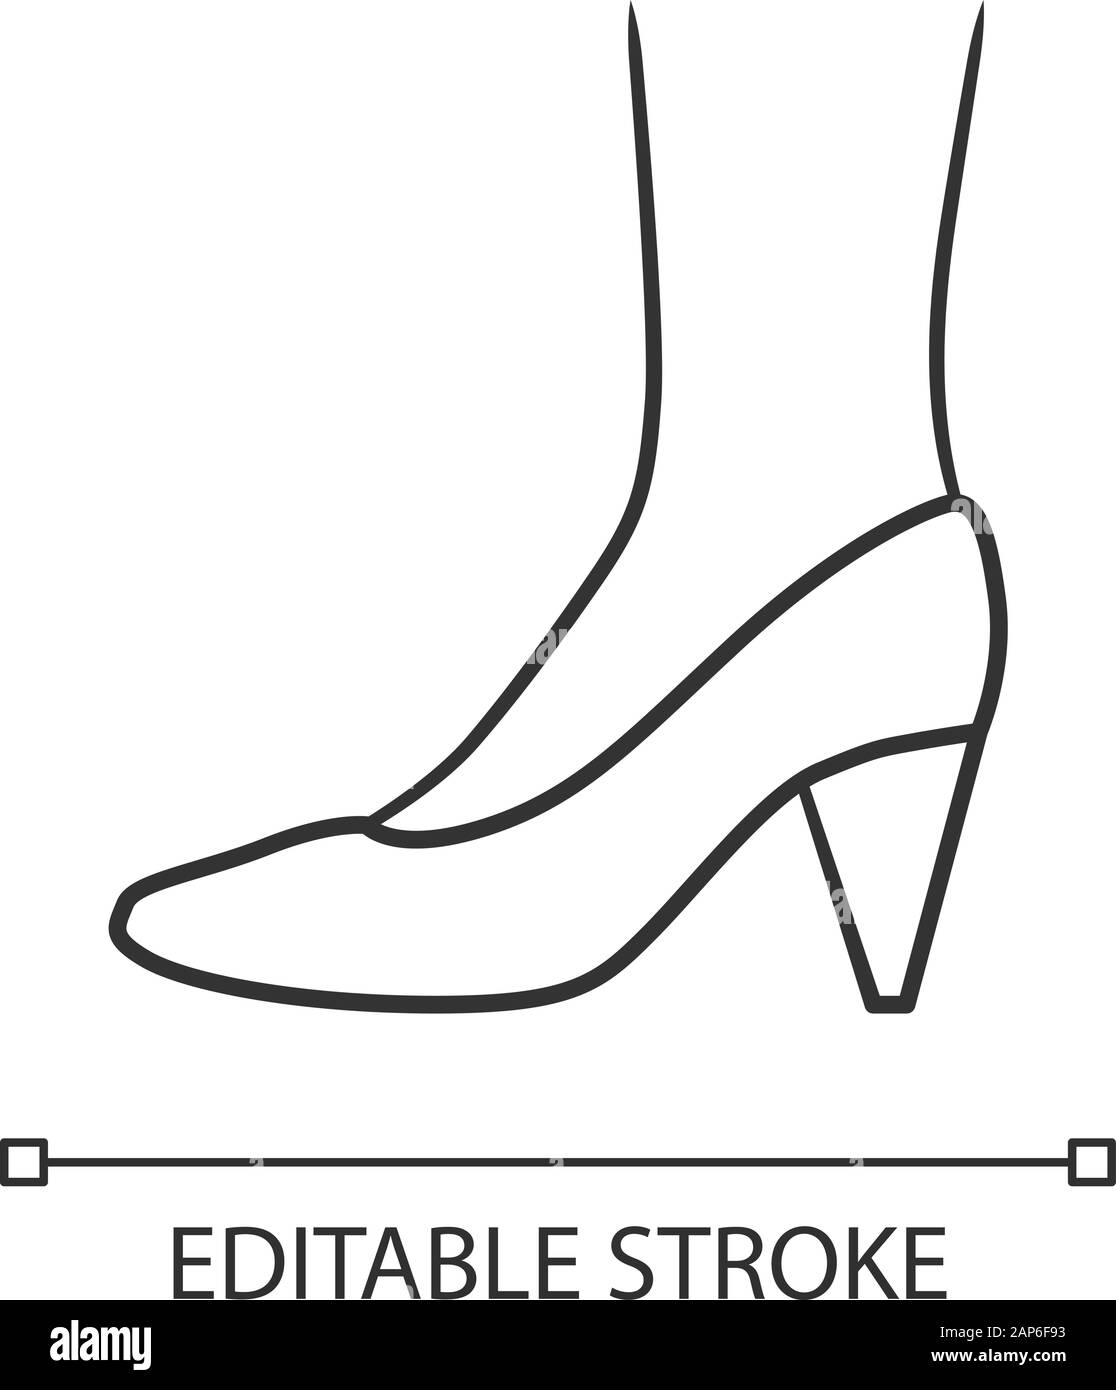 Woman high heels stiletto heels Stock Vector Images - Alamy